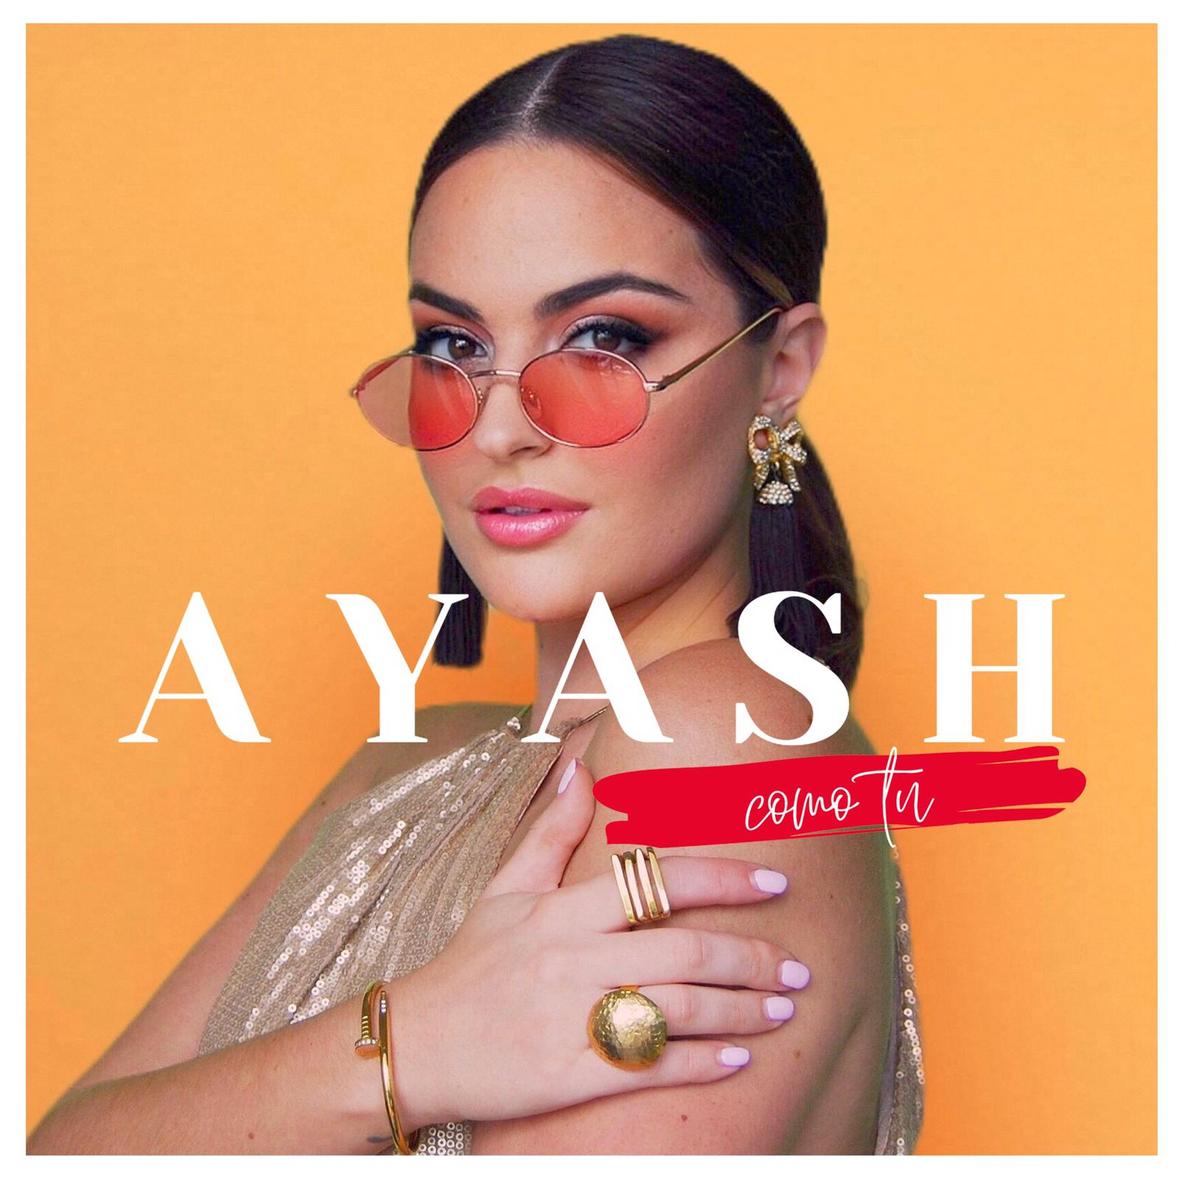 AYASH presenta su nuevo tema "Como Tu" Los Angeles Times reconoce su talento.